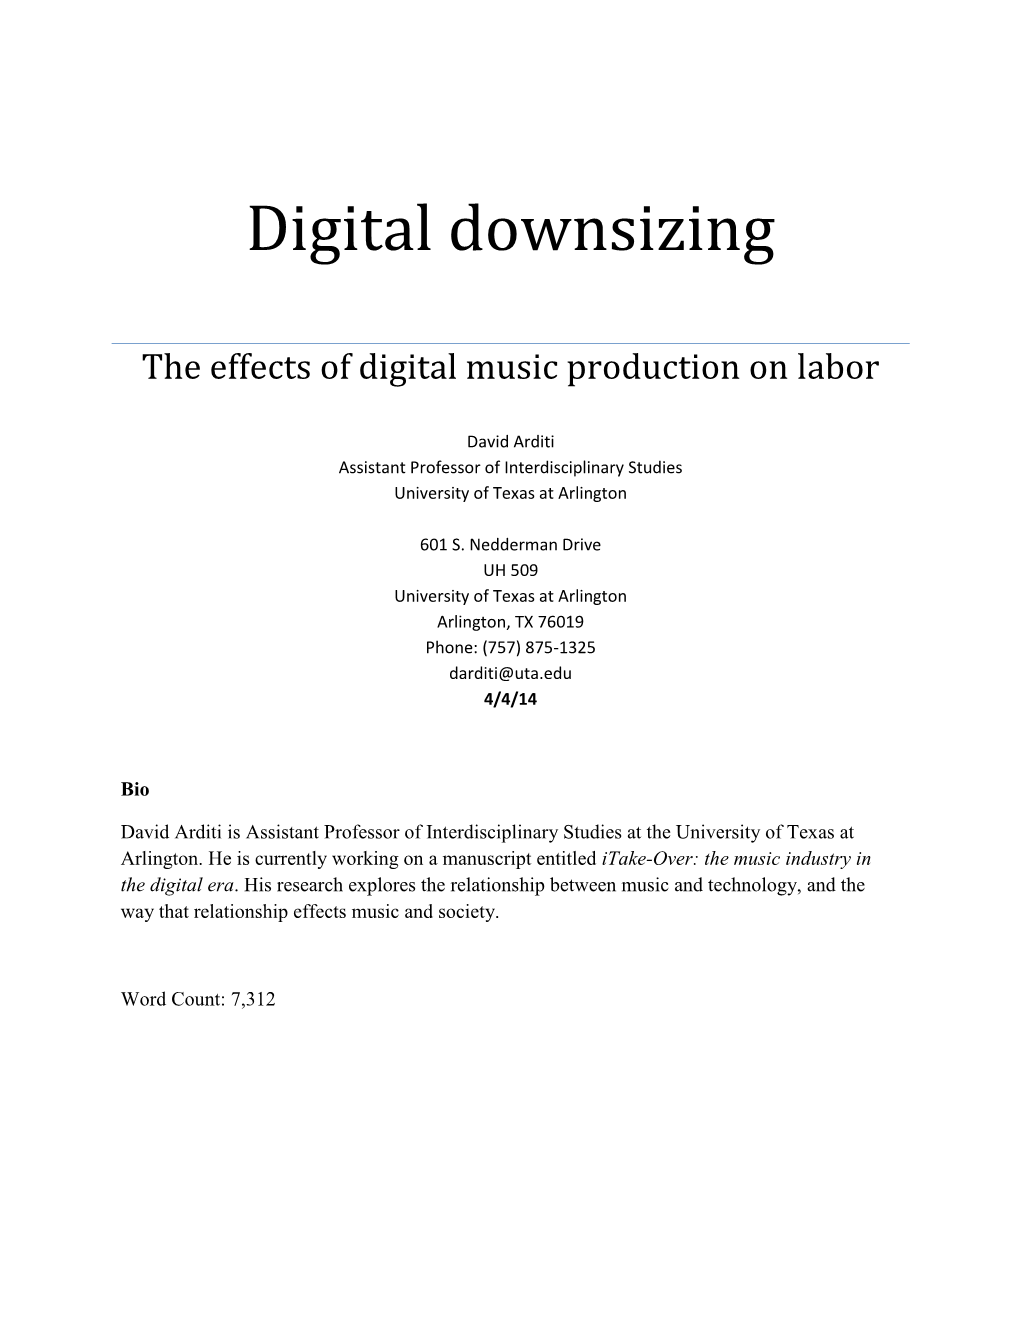 Digital Downsizing